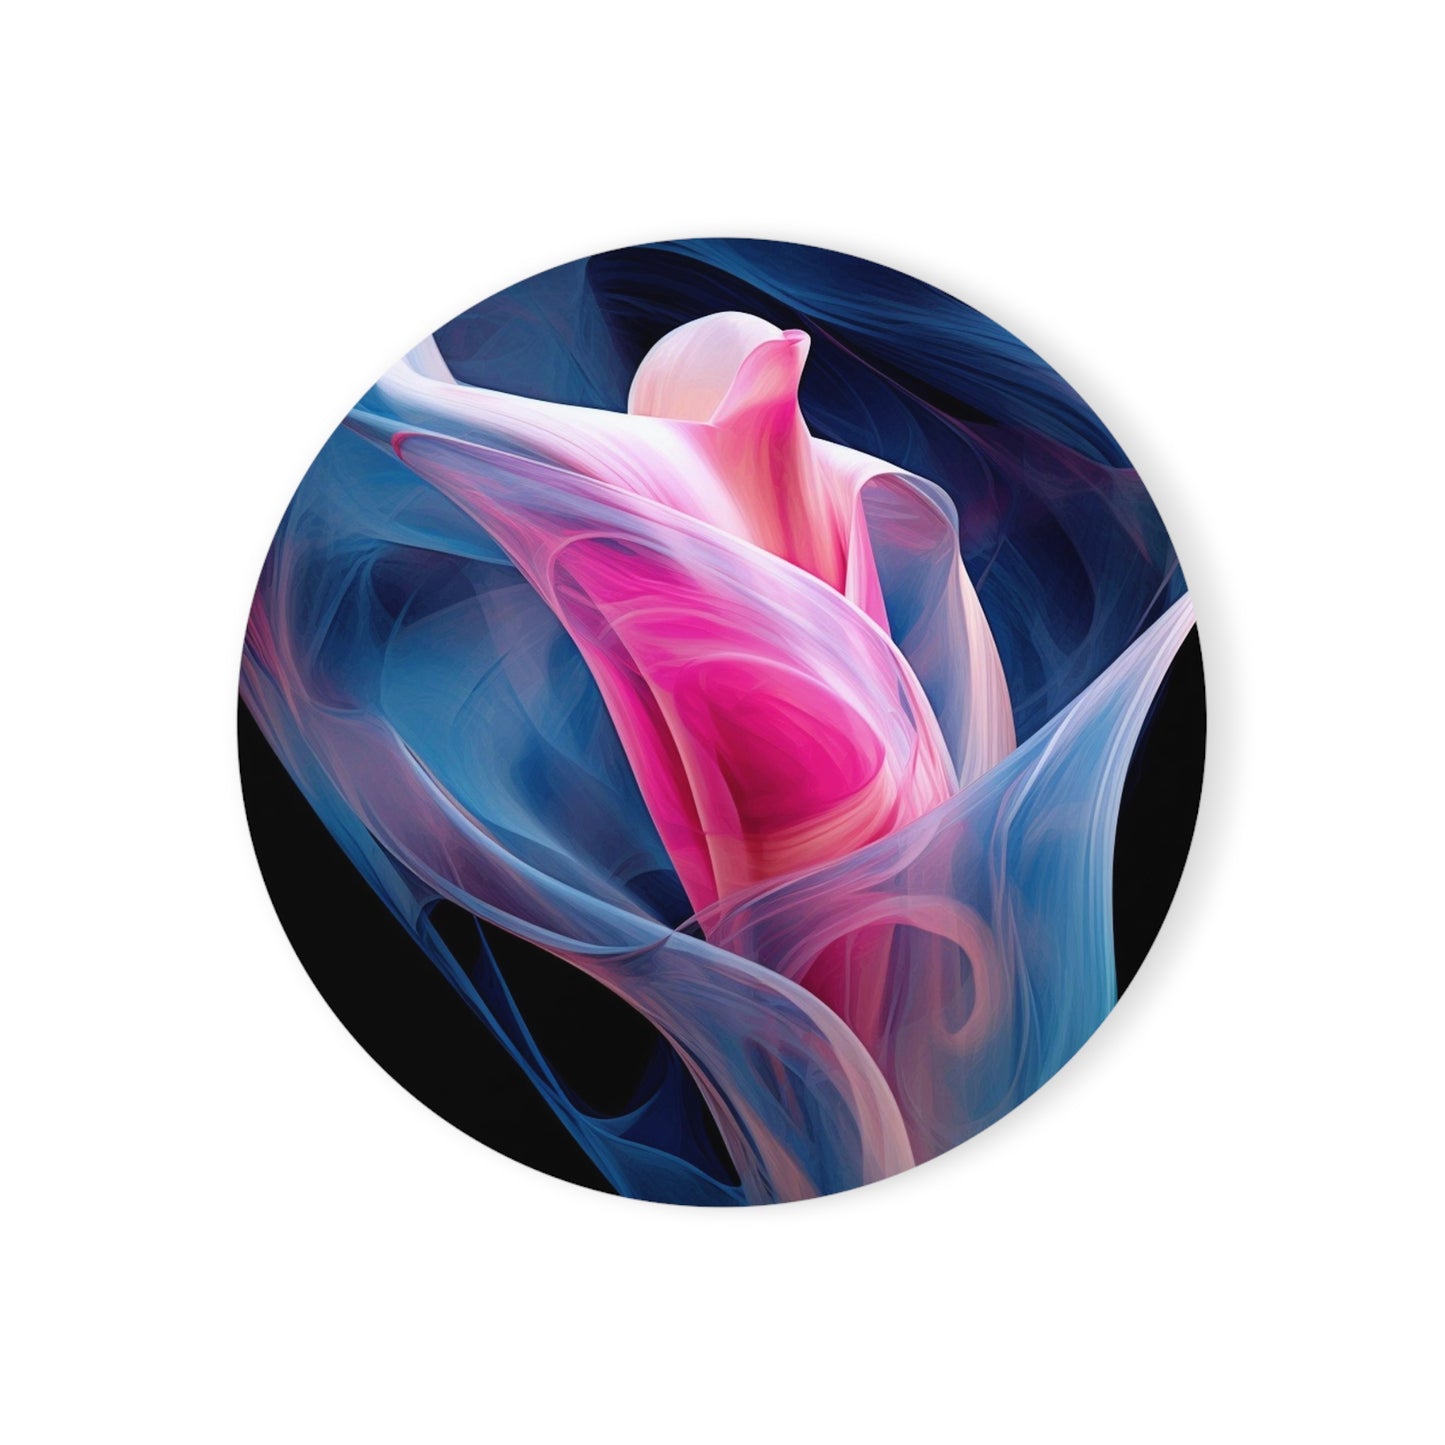 Cork Back Coaster Pink & Blue Tulip Rose 3